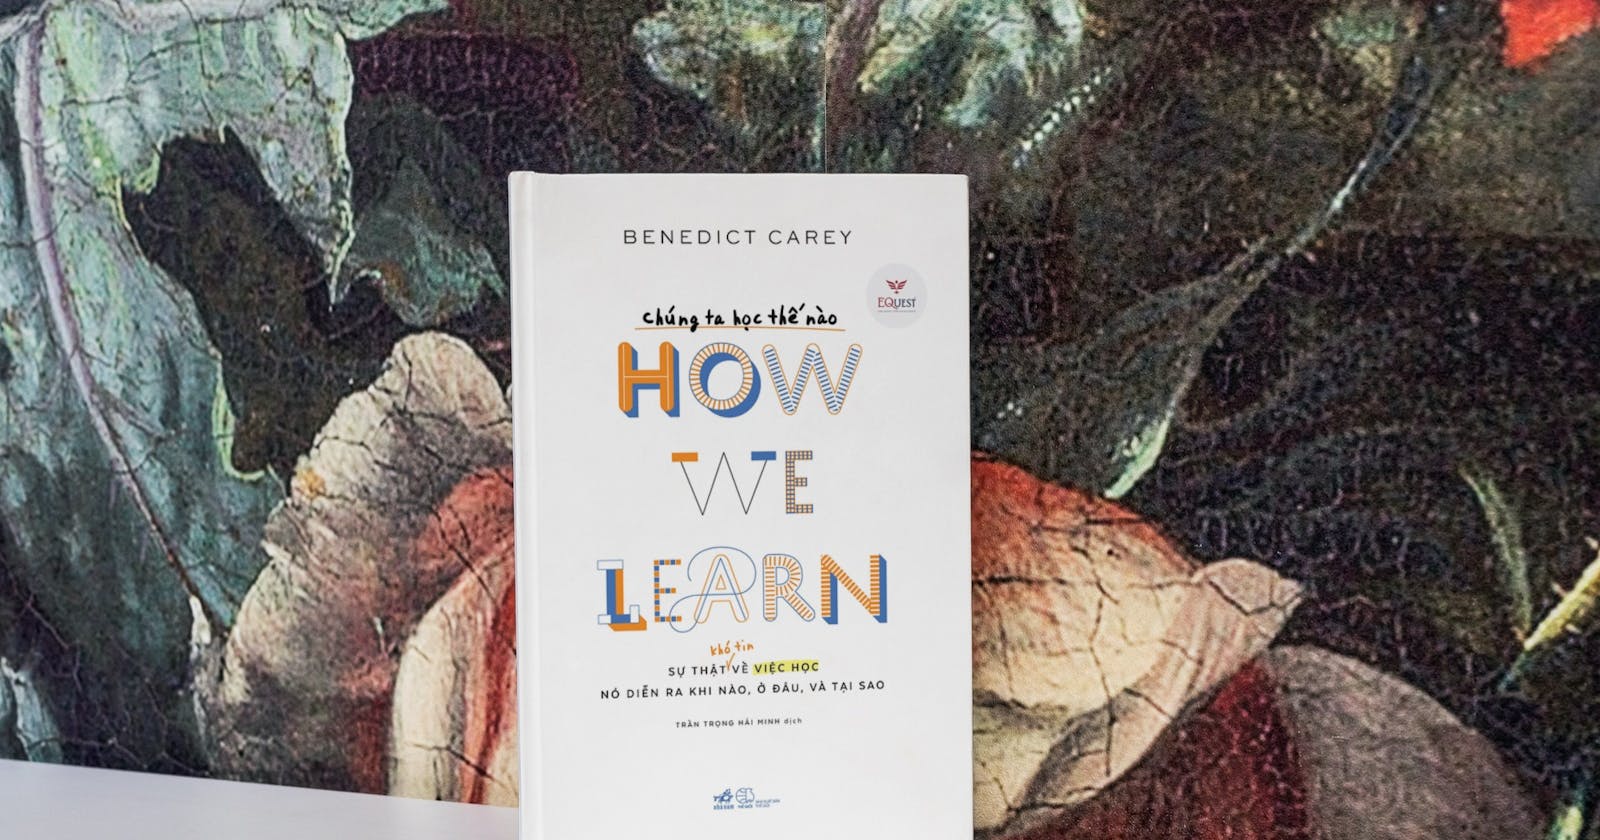 How we learn - Chúng ta học thế nào